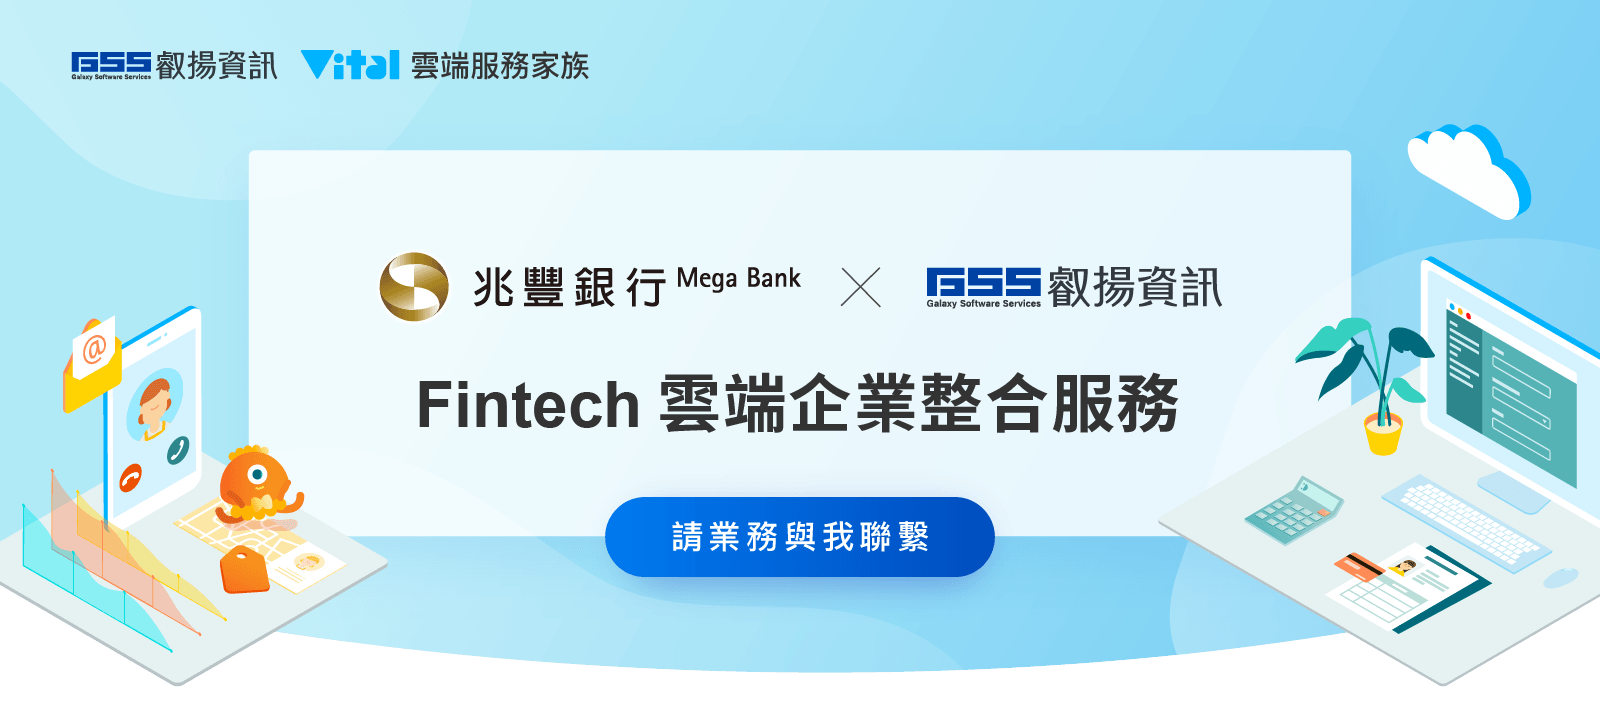 永豐銀行 x 叡揚資訊 Fintech 雲端企業整合服務